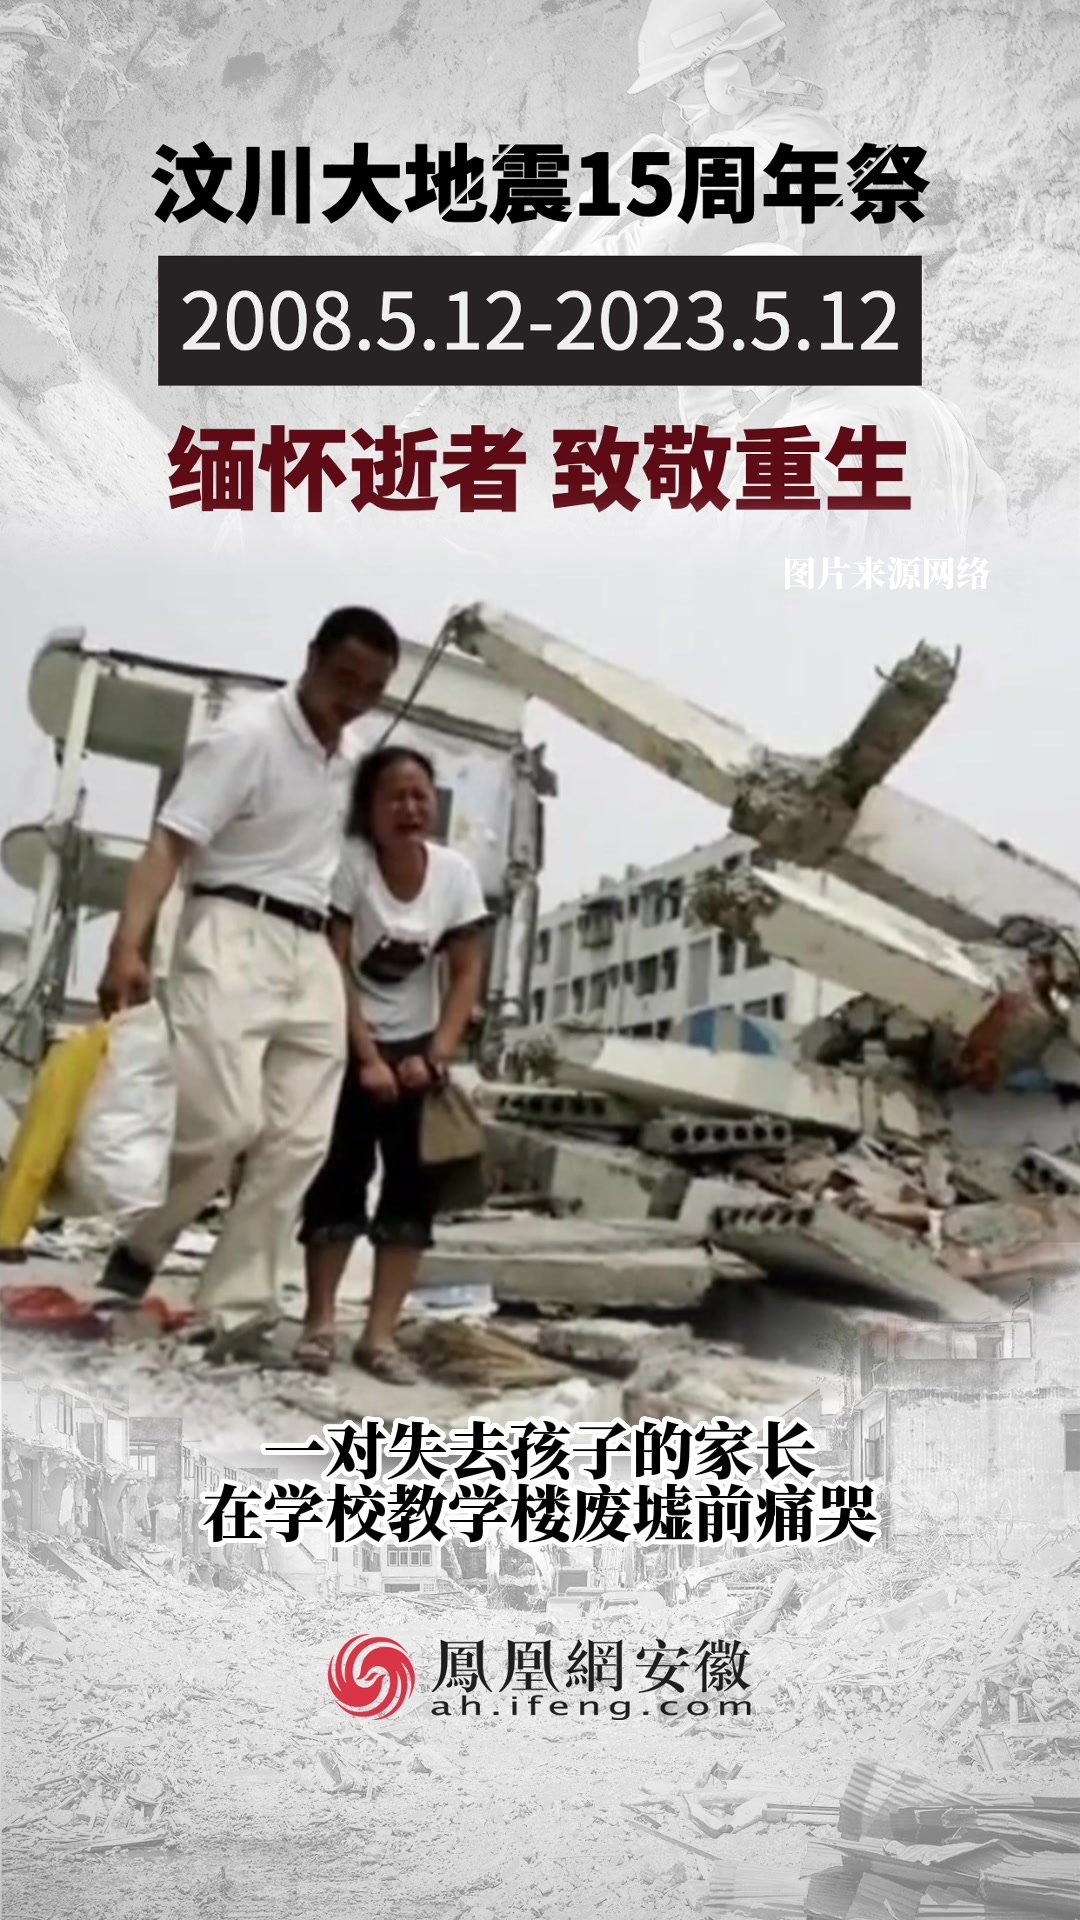 近代史上杀伤力最大的十次地震, 其中有三次在中国